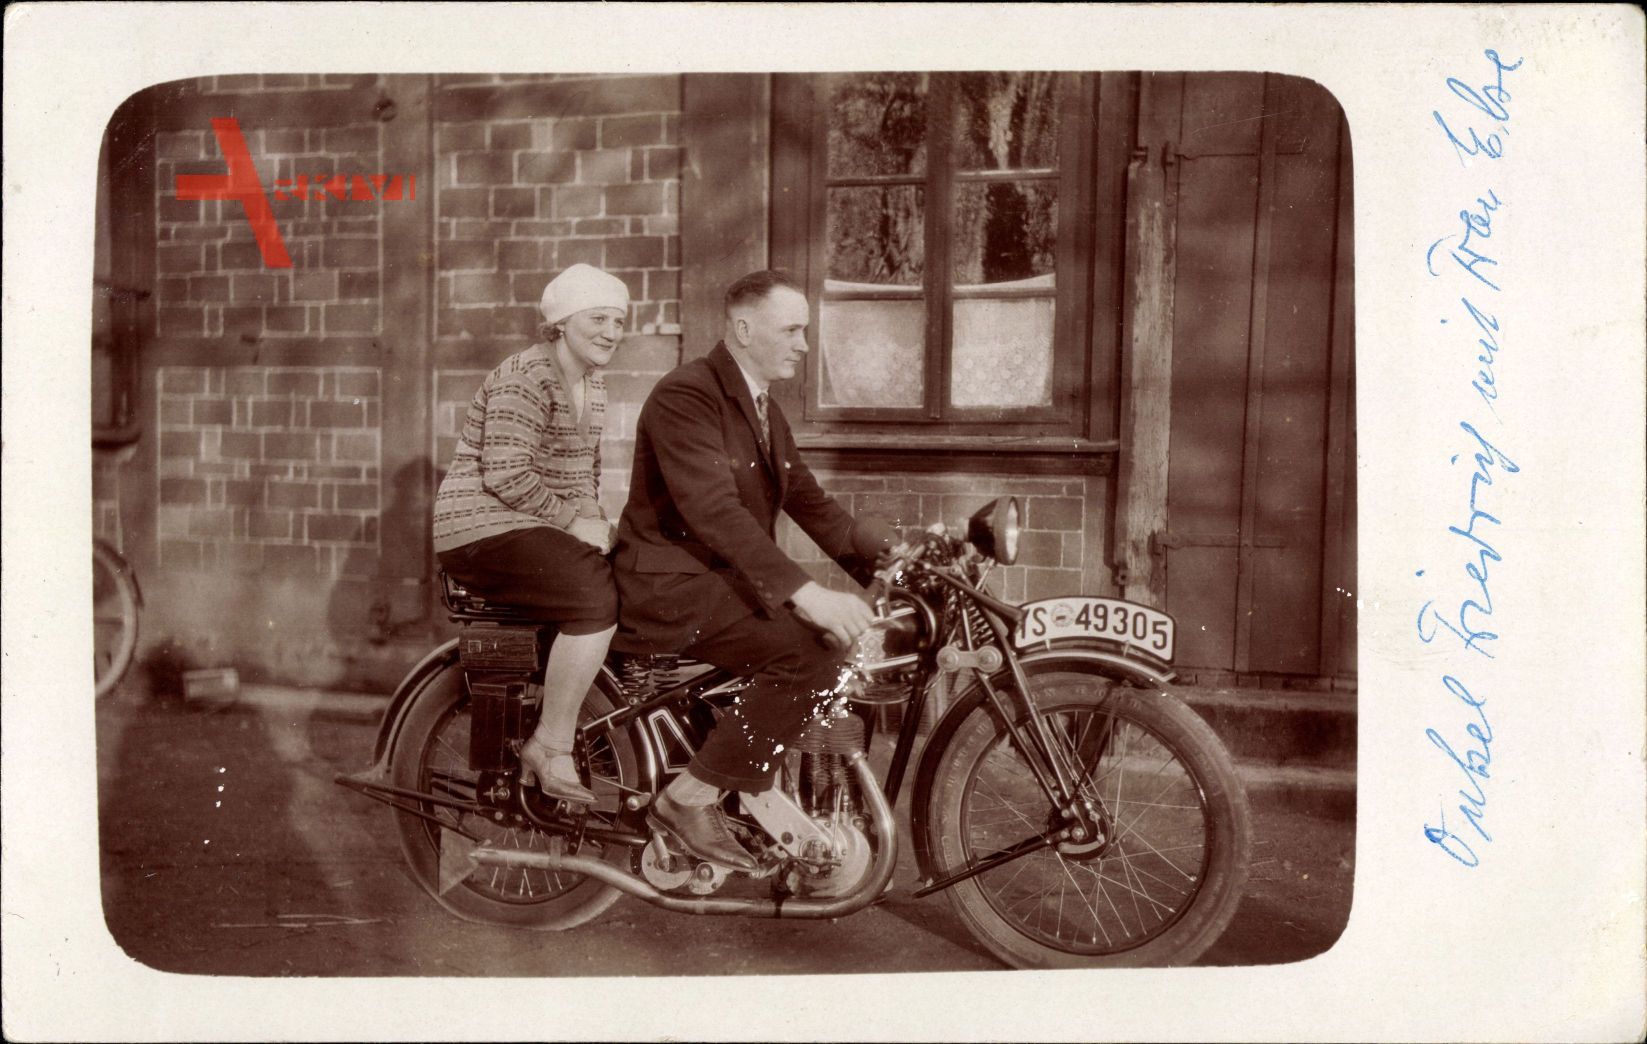 Ehepaar auf einem Motorrad, Hutchinson Corp. Reifen, IS 49305